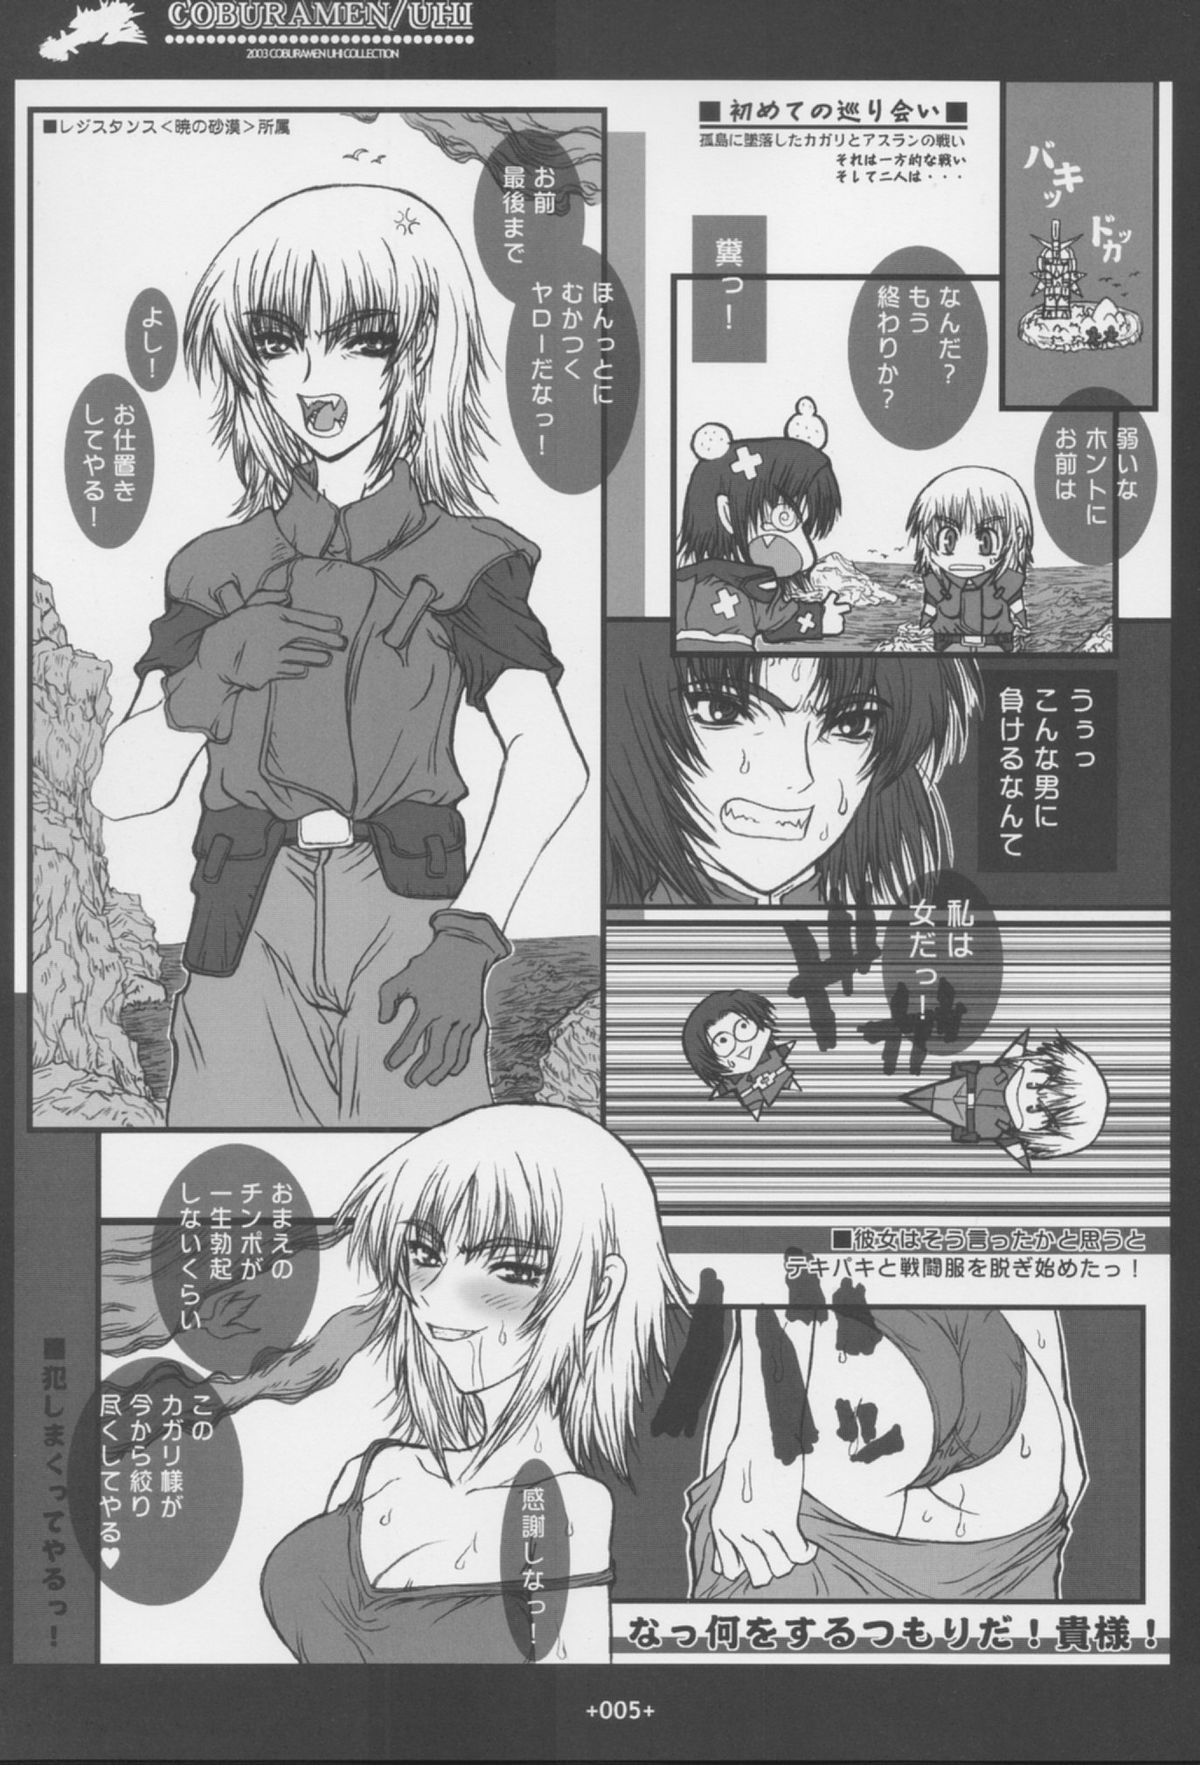 [Coburamenman (Uhhii)] GS (Gundam Seed) page 6 full